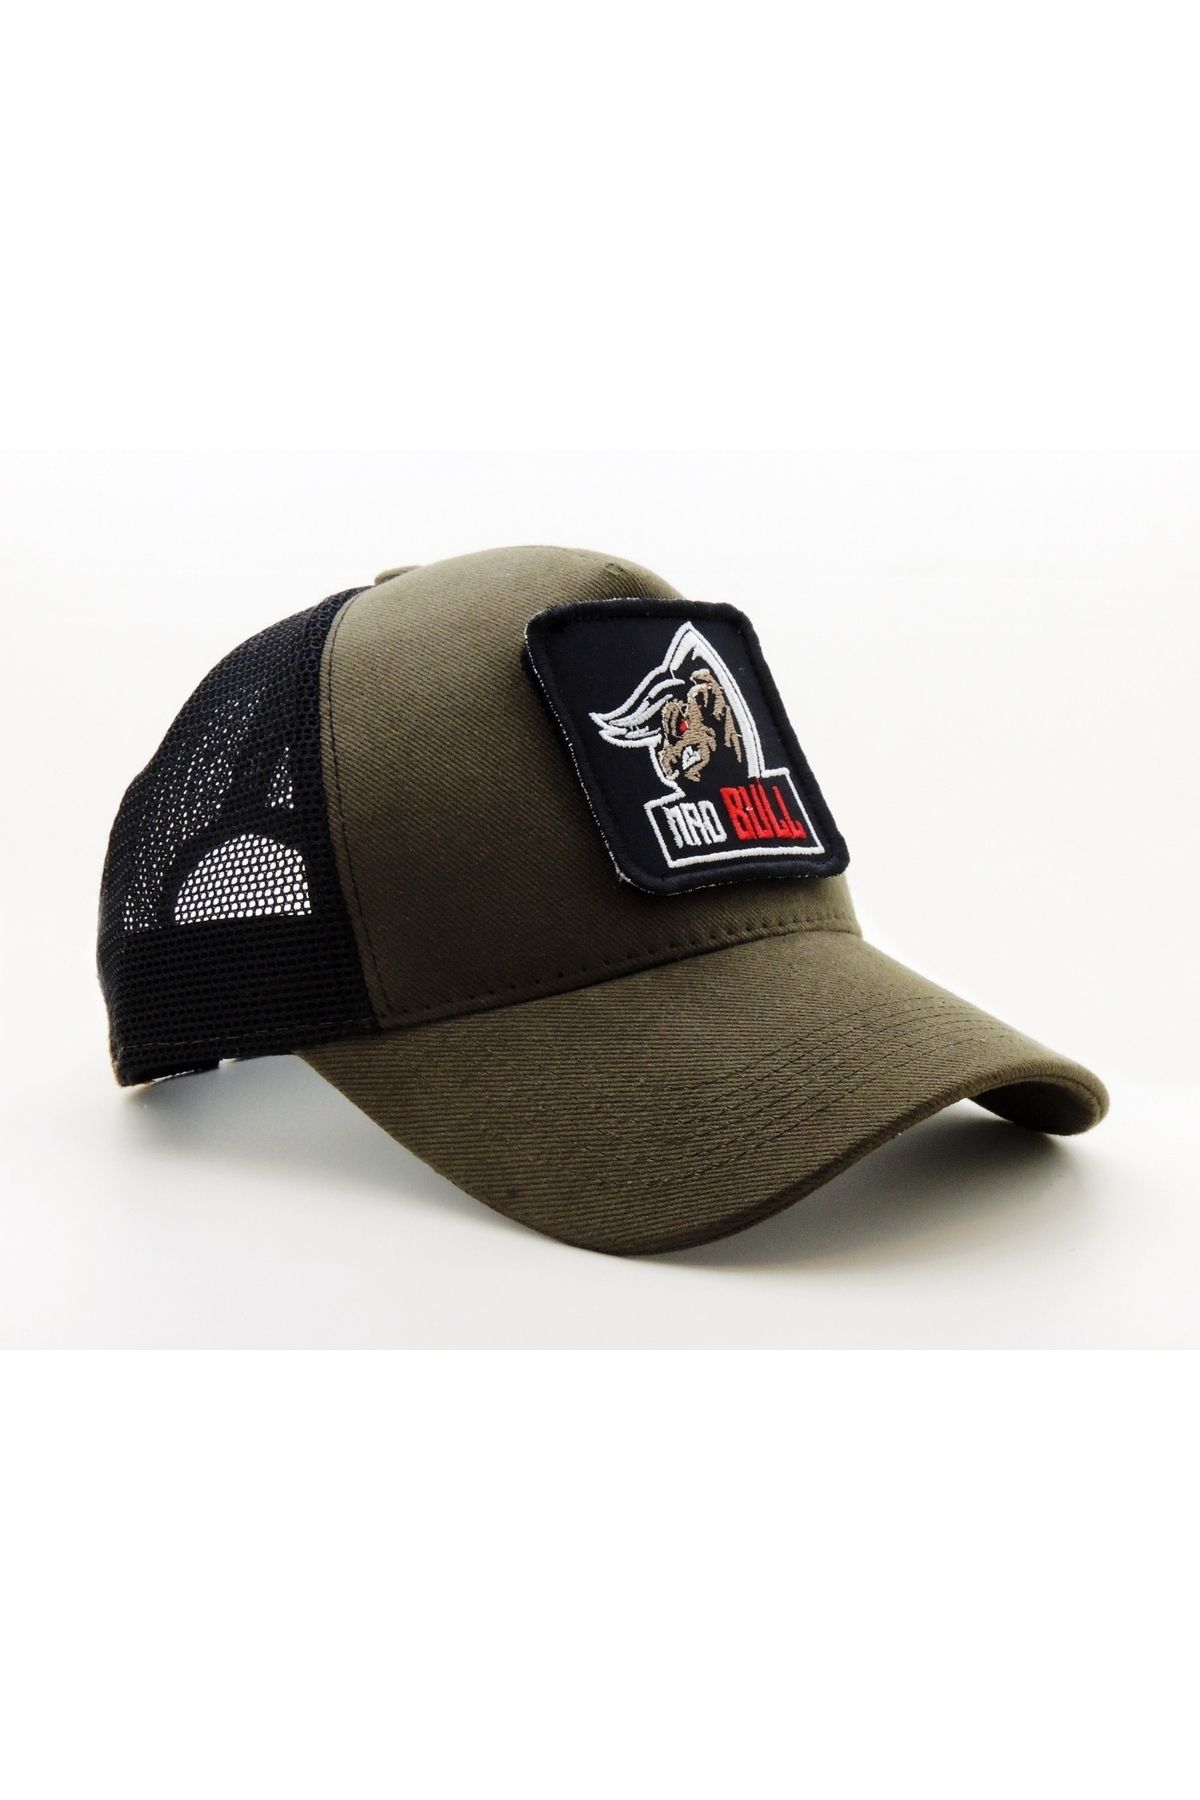 CityGoat Trucker (NAKIŞ) MAD BULL Logolu Unisex Haki-Siyah Şapka (CAP)